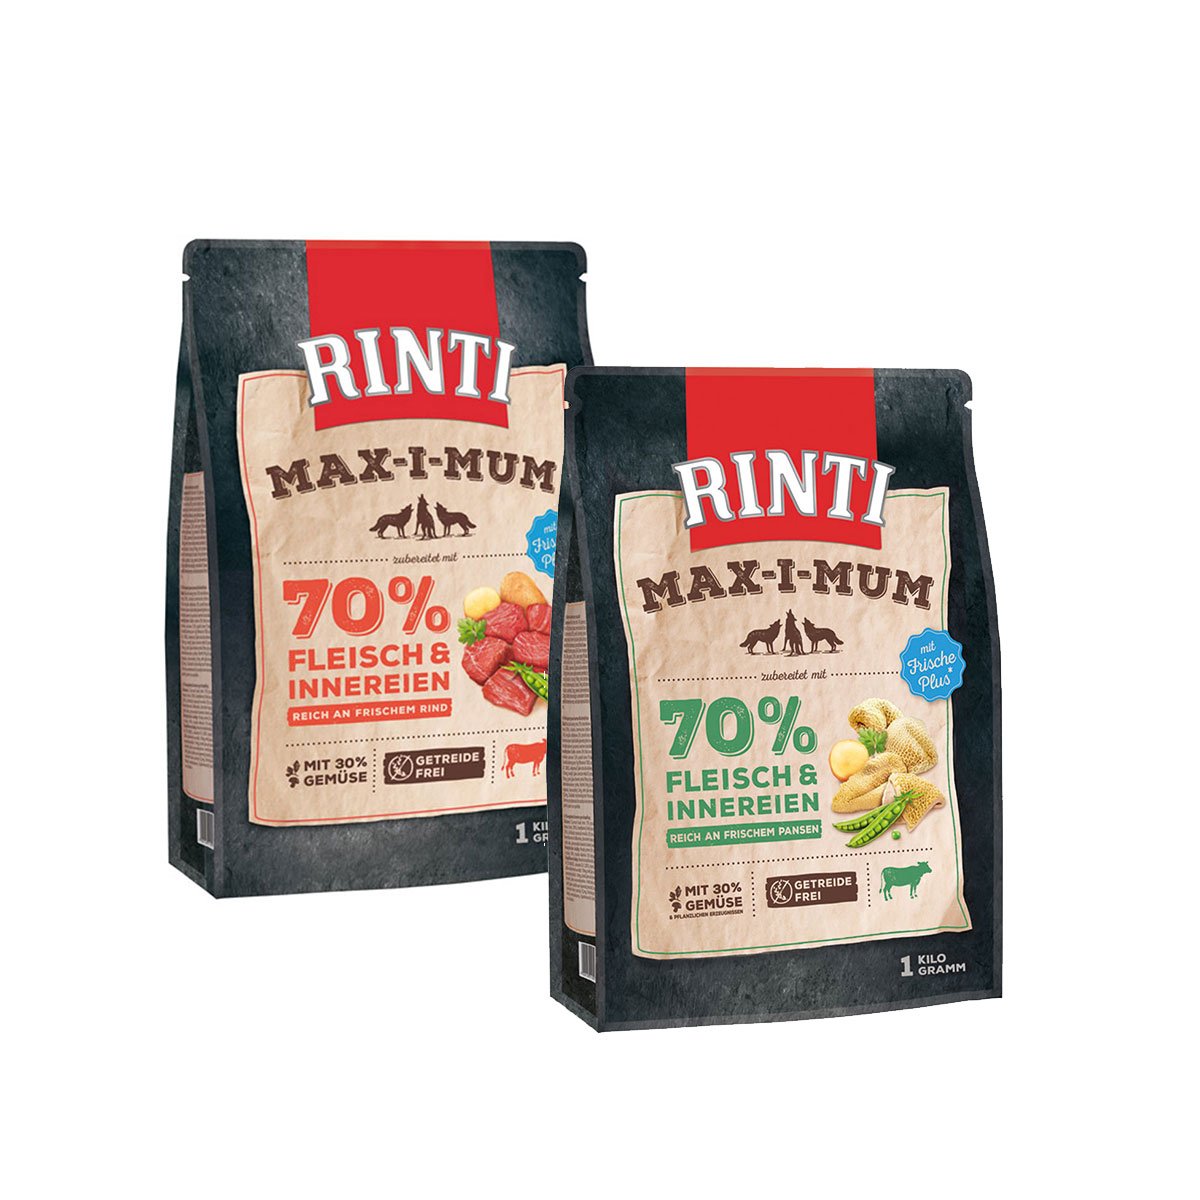 Rinti Max-i-Mum Rind und Pansen Mixpaket 2x4kg von Rinti